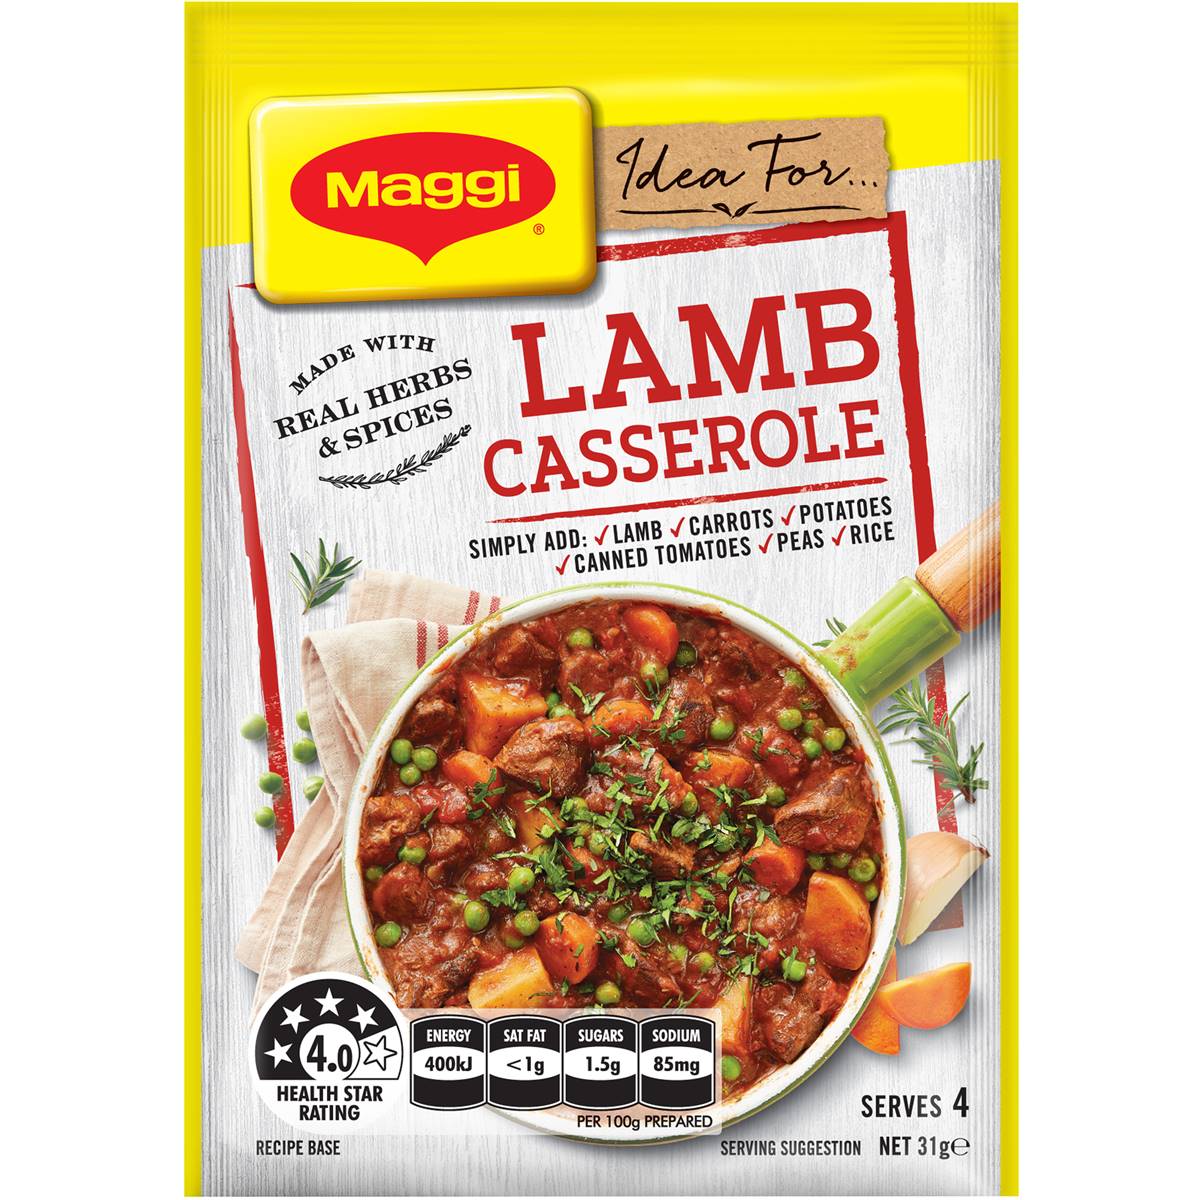 Maggi Lamb Casserole Recipe Base